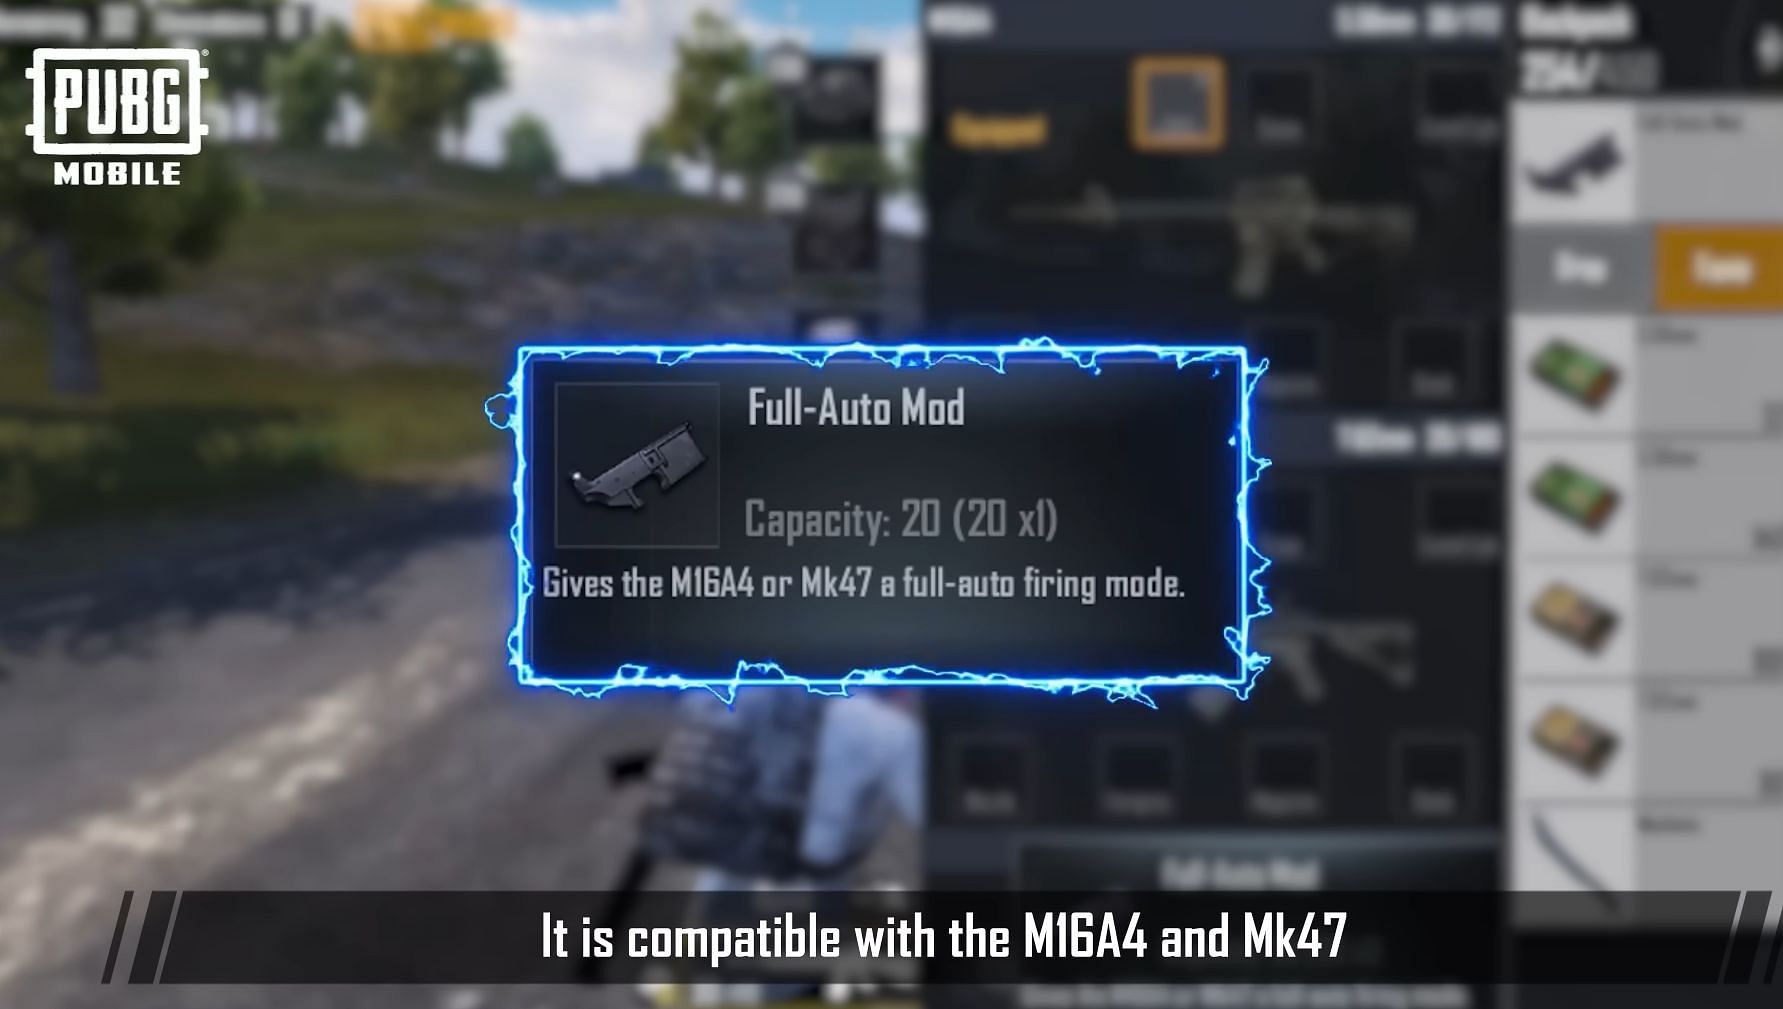 Full-Auto Mod attachment for MK47 and M16A4 (Image via Krafton)